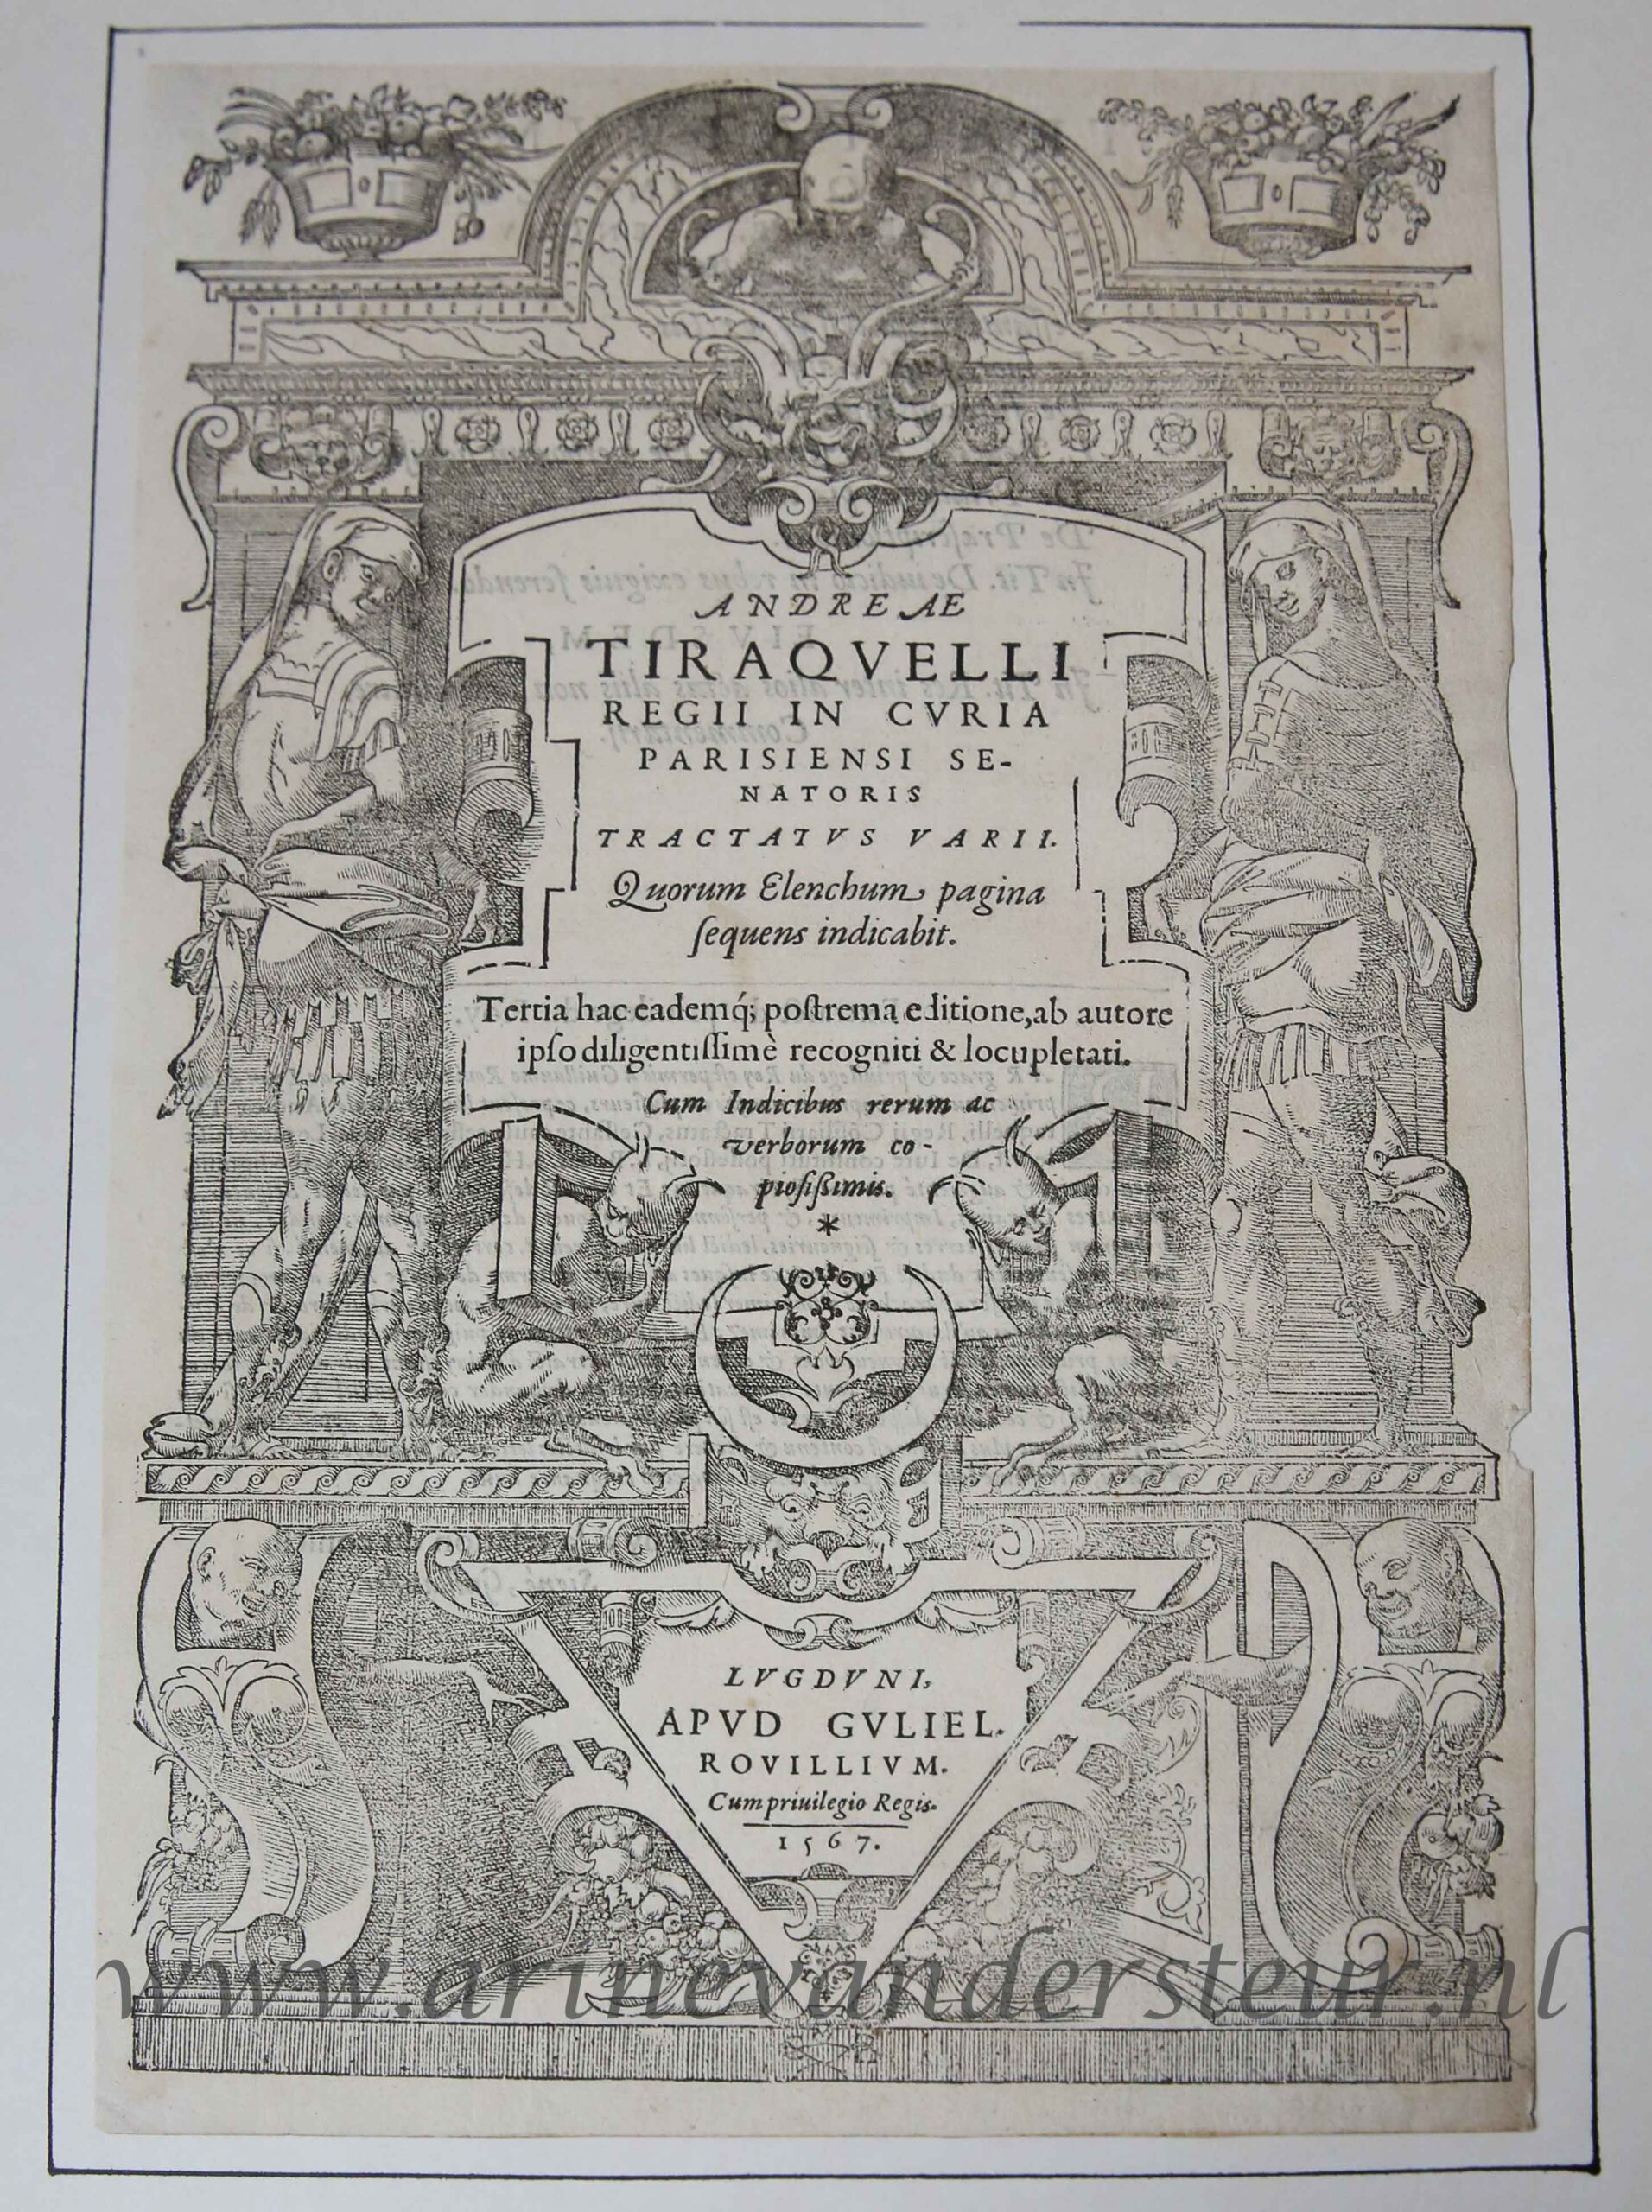 [Antique title page, 1567] Andreae Tiraquelli regii in curia Parisiensi senatoris Tractatus varii, published 1567, 1 p.